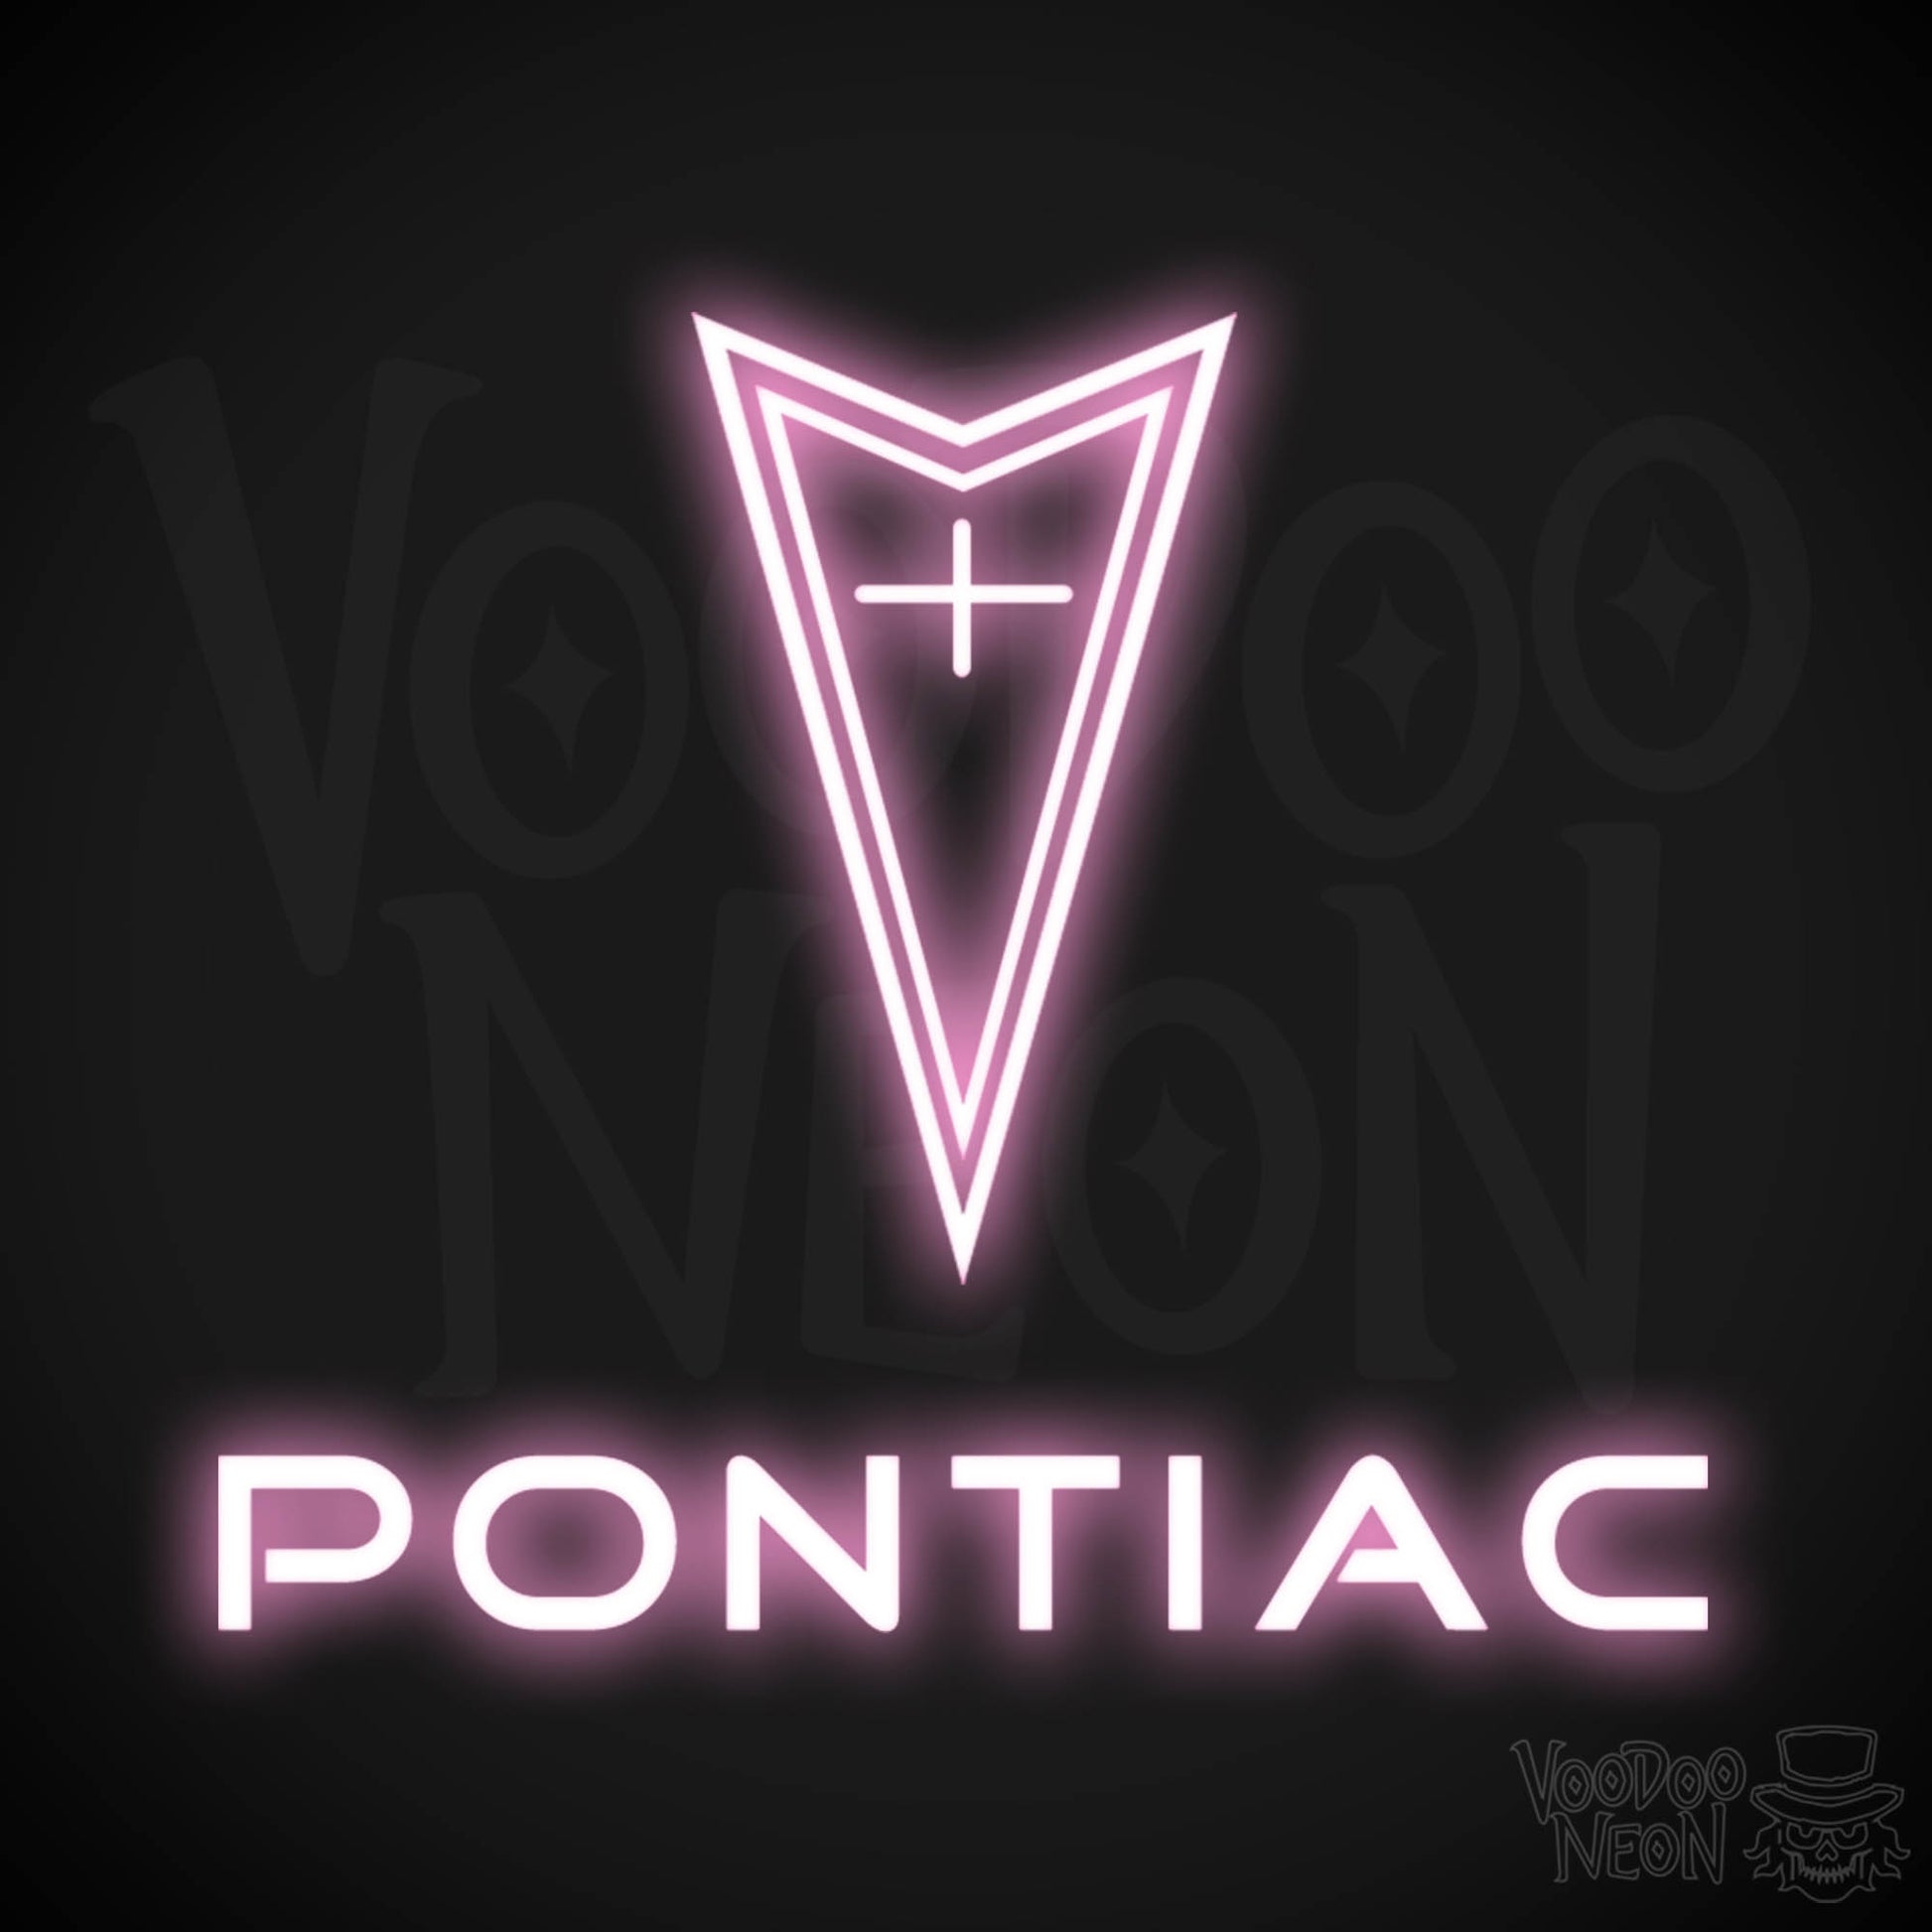 Pontiac Neon Sign - Pontiac Sign - Pontiac Decor - Wall Art - Color Light Pink